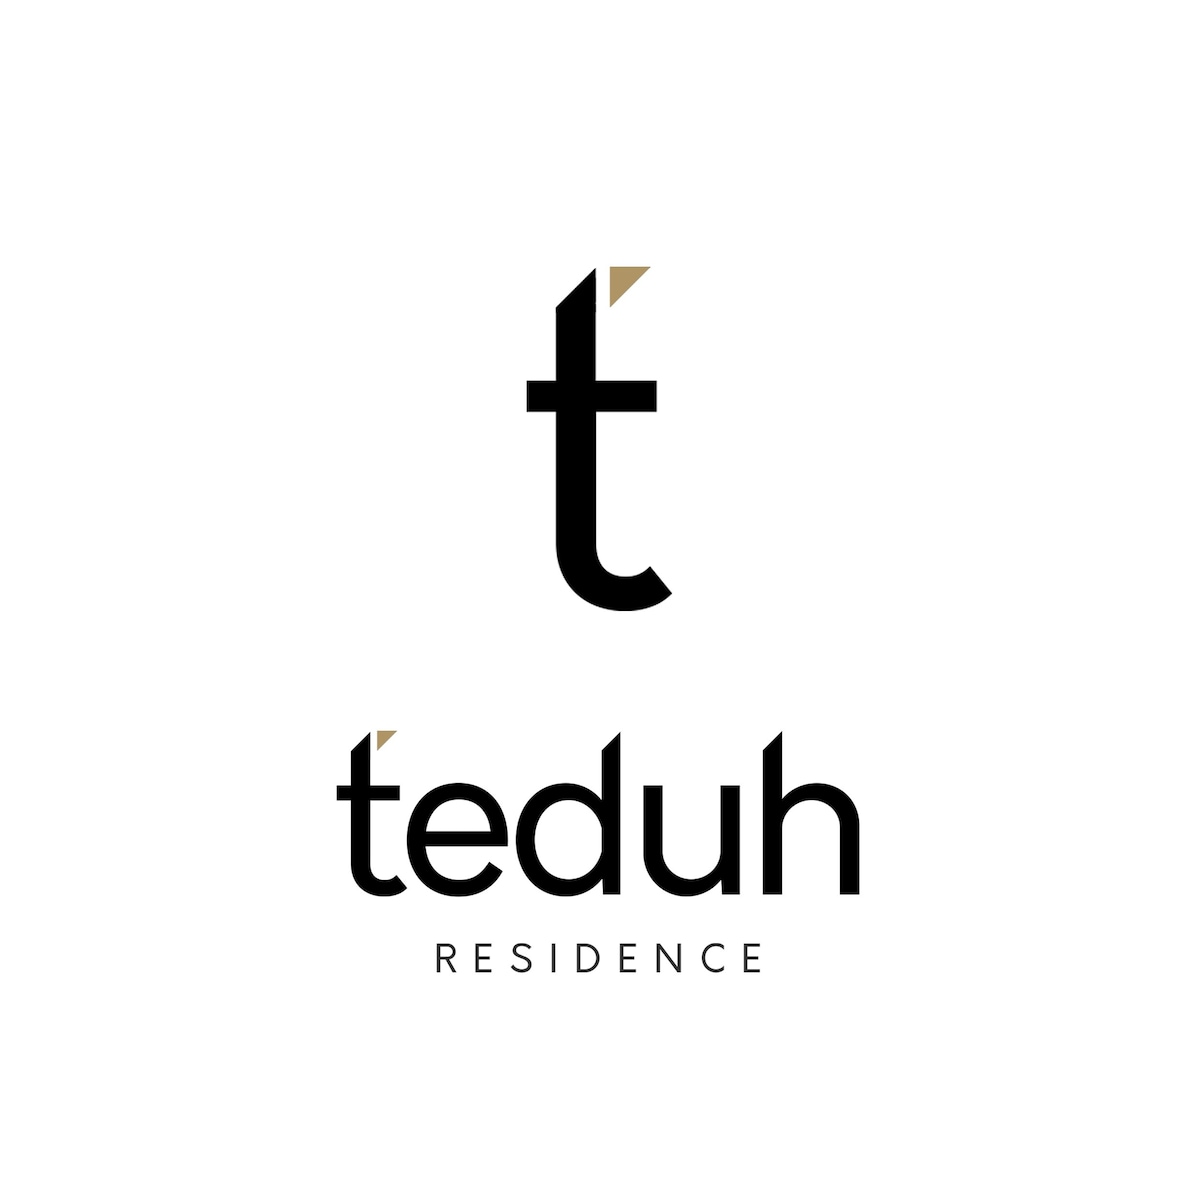 TEDUH Residence